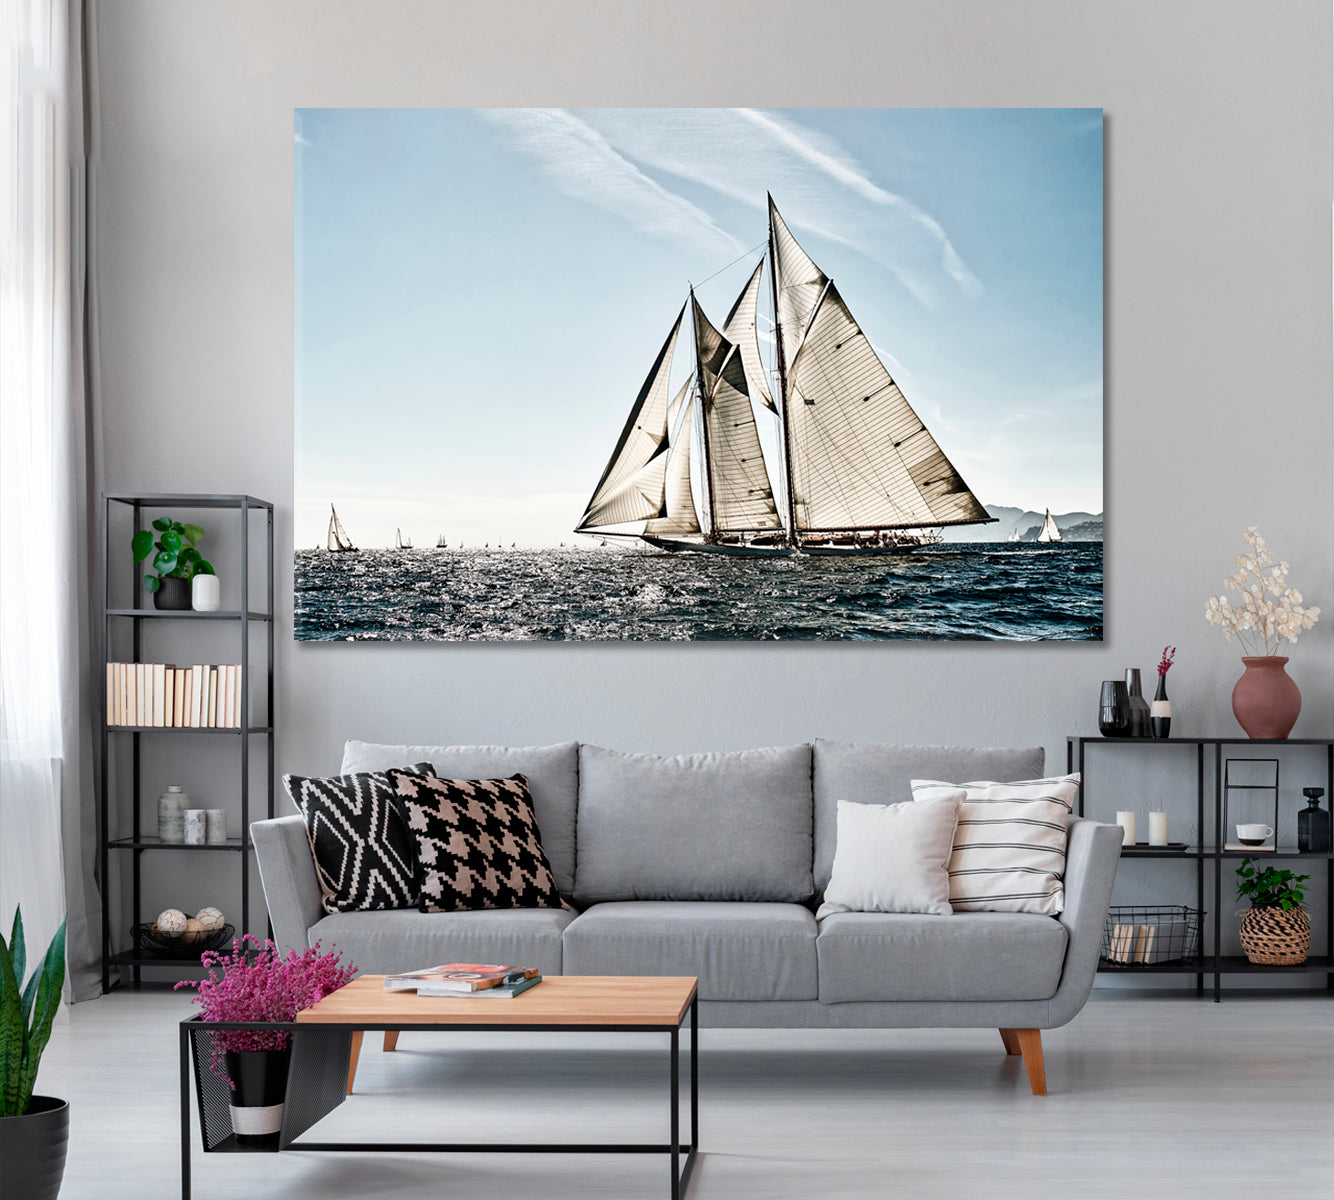 Sailboat Regatta Canvas Print ArtLexy 1 Panel 24"x16" inches 